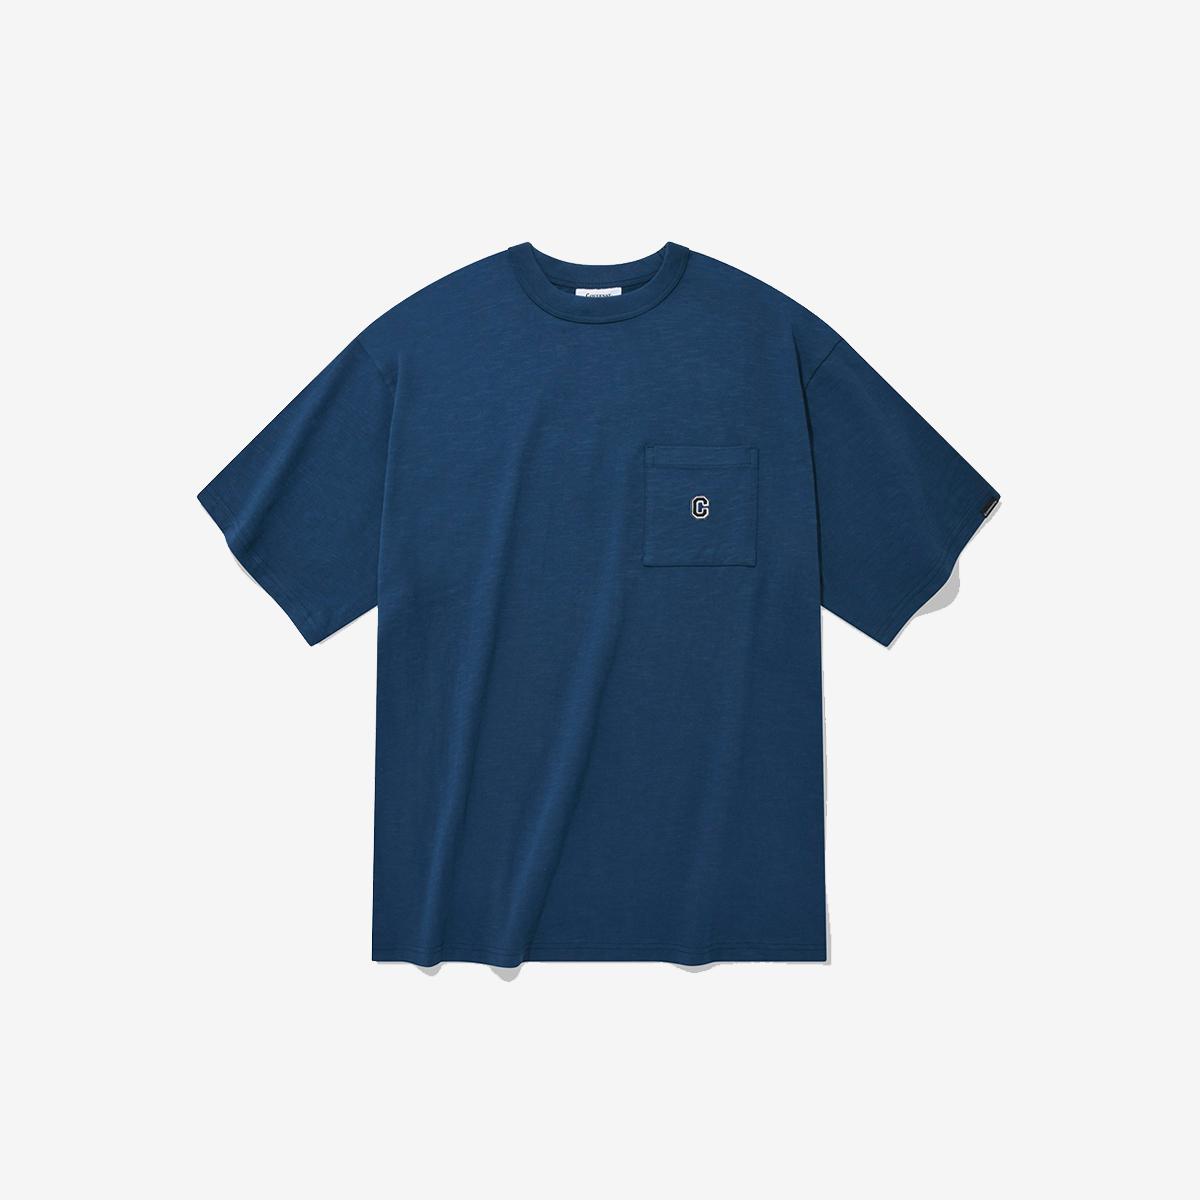 口袋刺繡C LOGO短袖T恤（藍色）